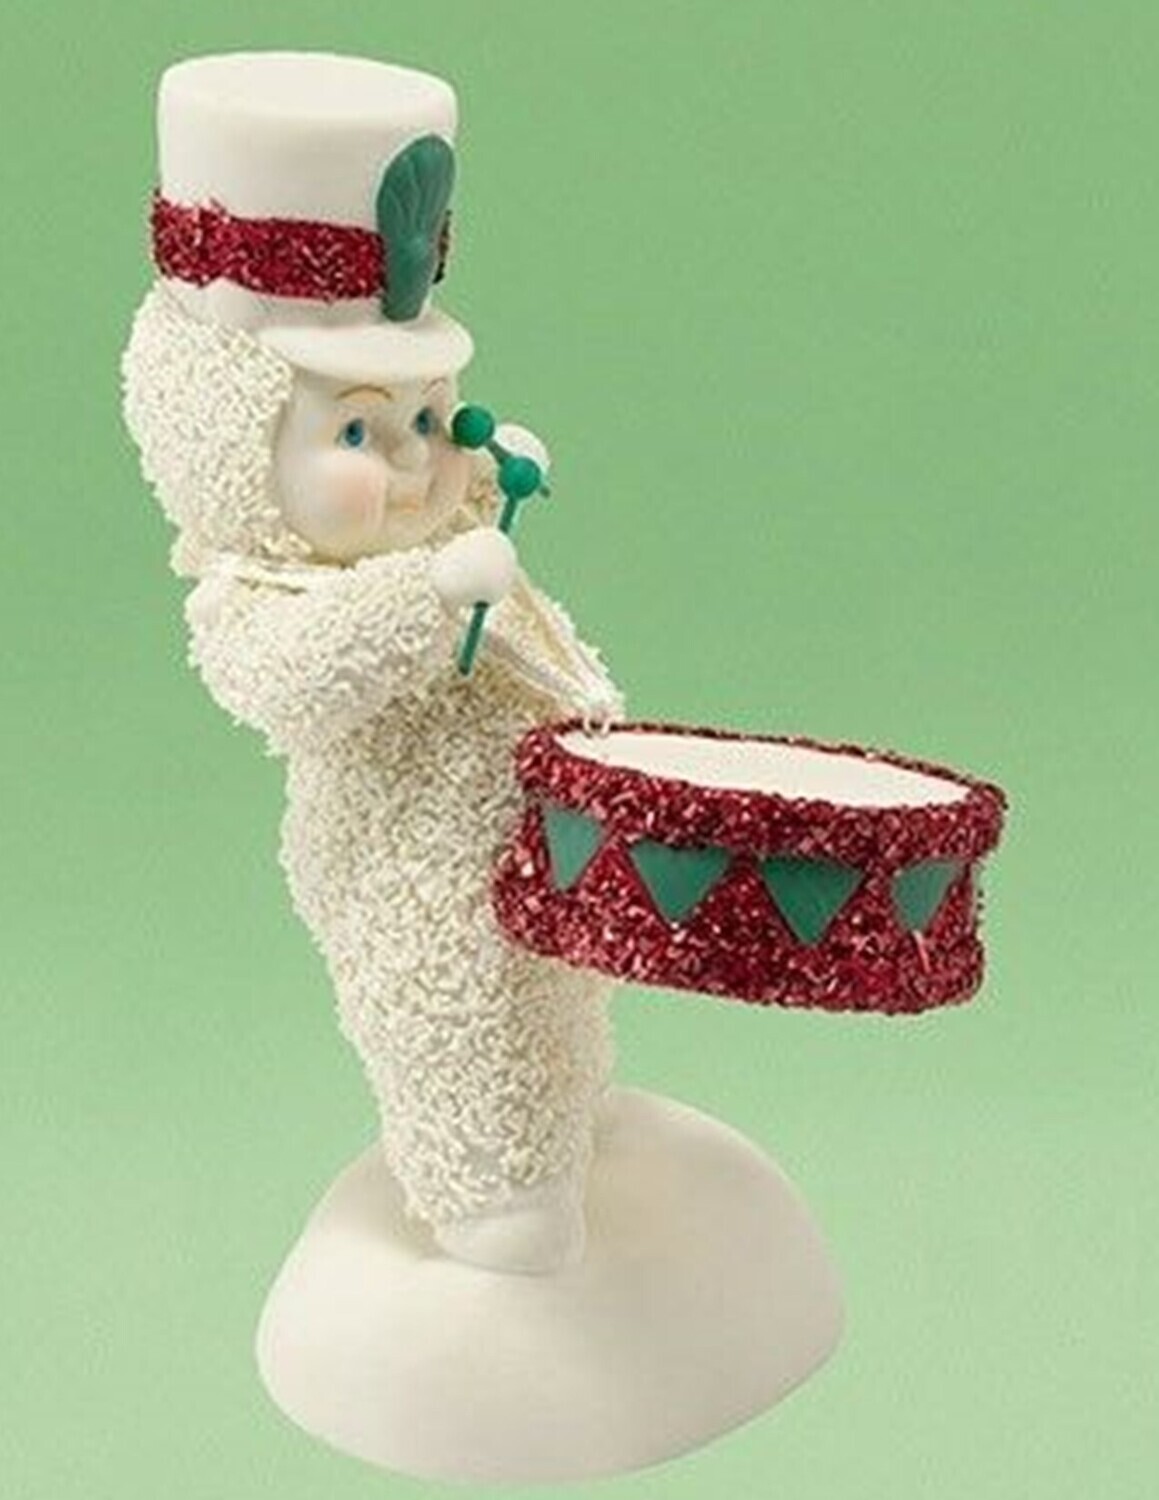 Department 56​ ​Snowbabies Collection "Little Drummer Boy" Snowbaby Figurine (4031985)